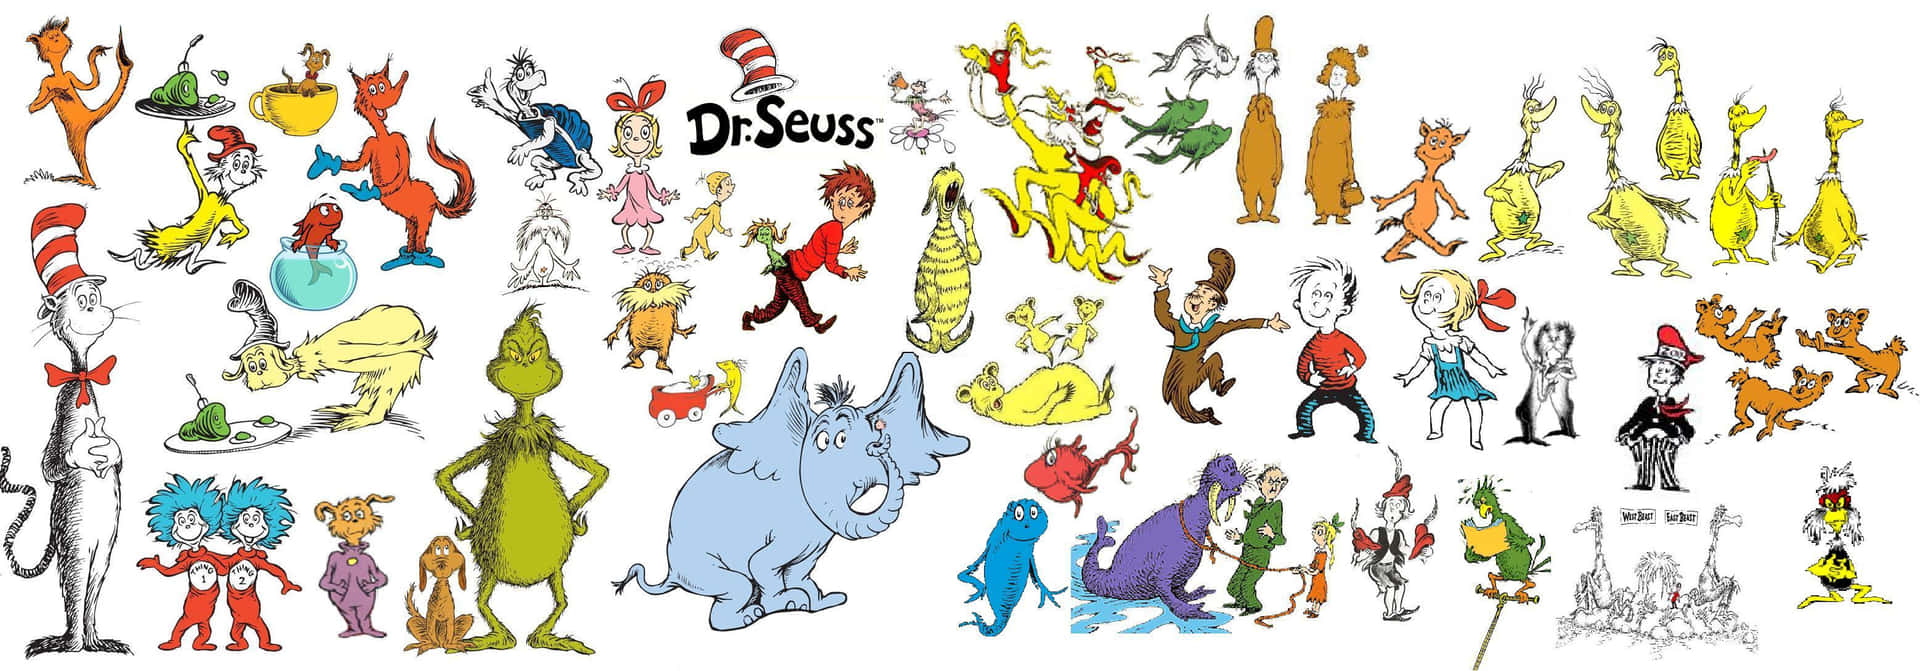 Increíbleilustración De Los Personajes De Los Libros De Dr. Seuss Para Fondos De Pantalla De Computadora O Móvil. Fondo de pantalla